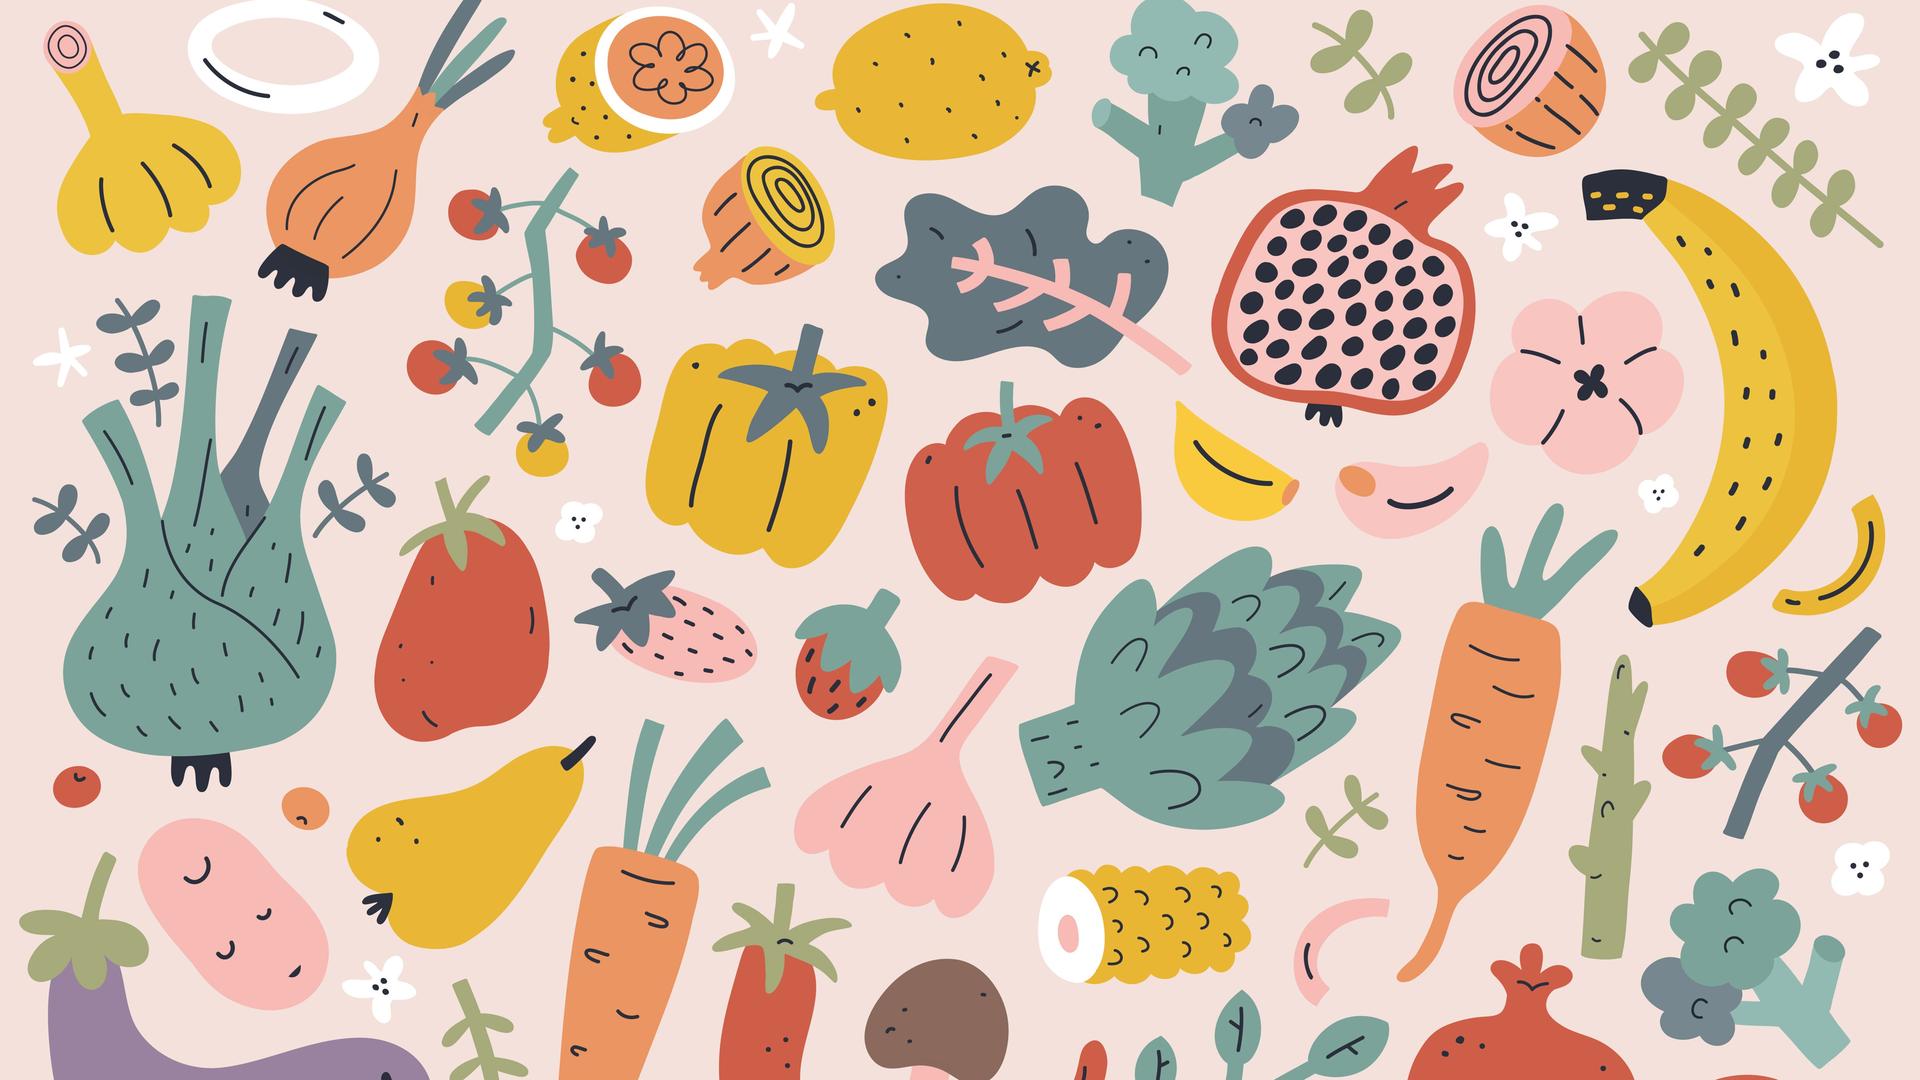 Illustration von vielfältigem Obst und Gemüse.